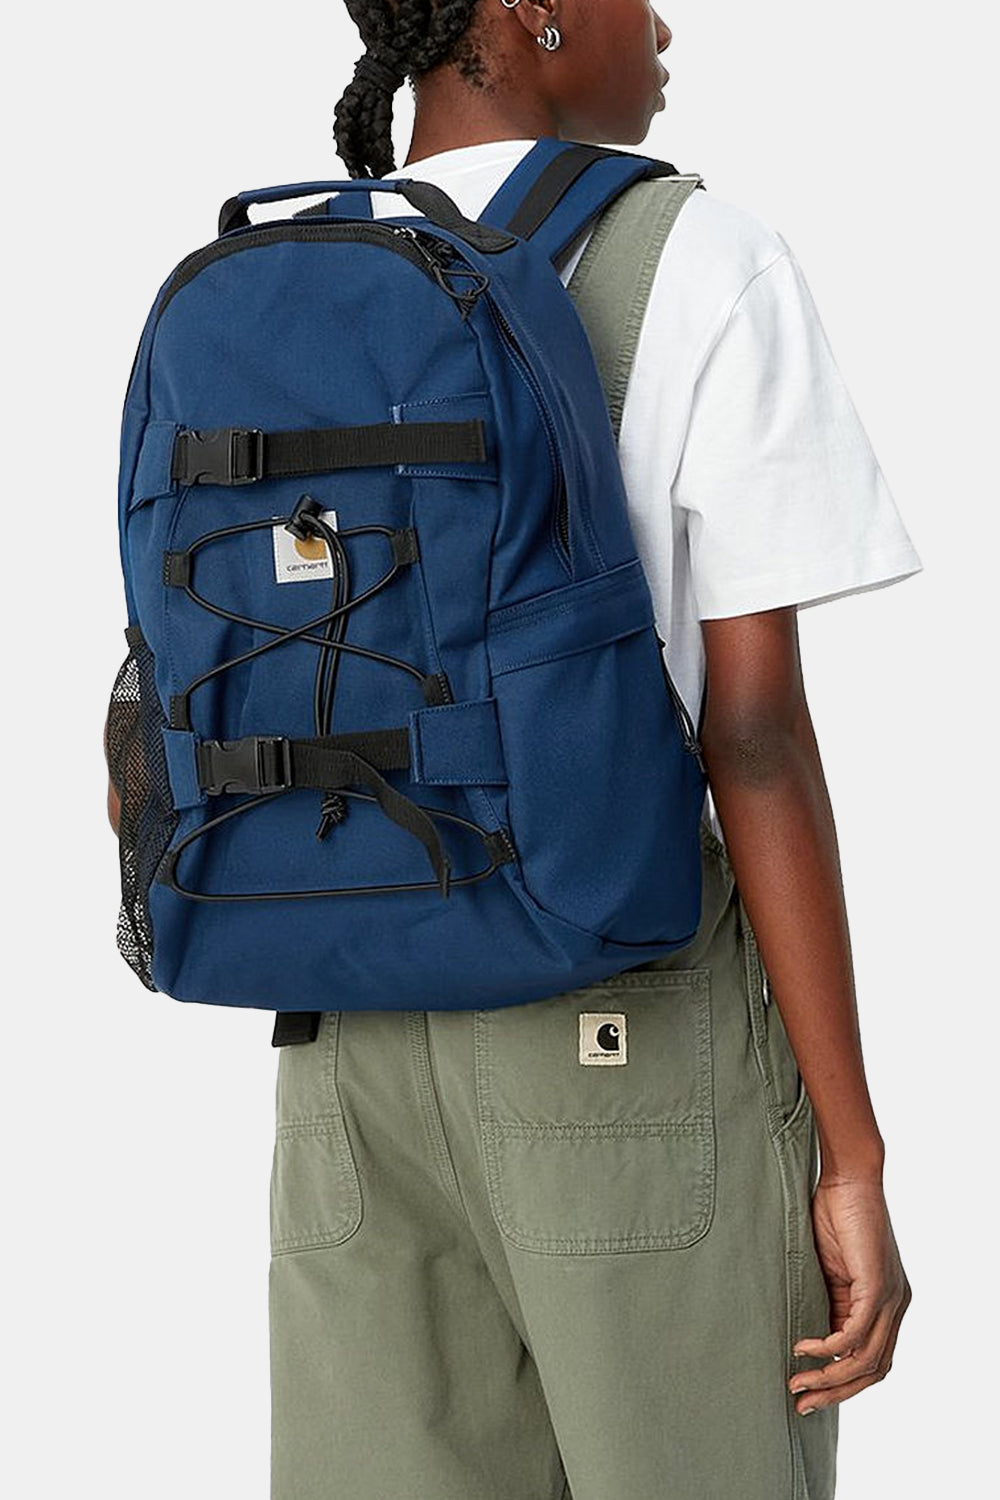 Carhartt WIP Kickflip Backpack (Elder Blue)